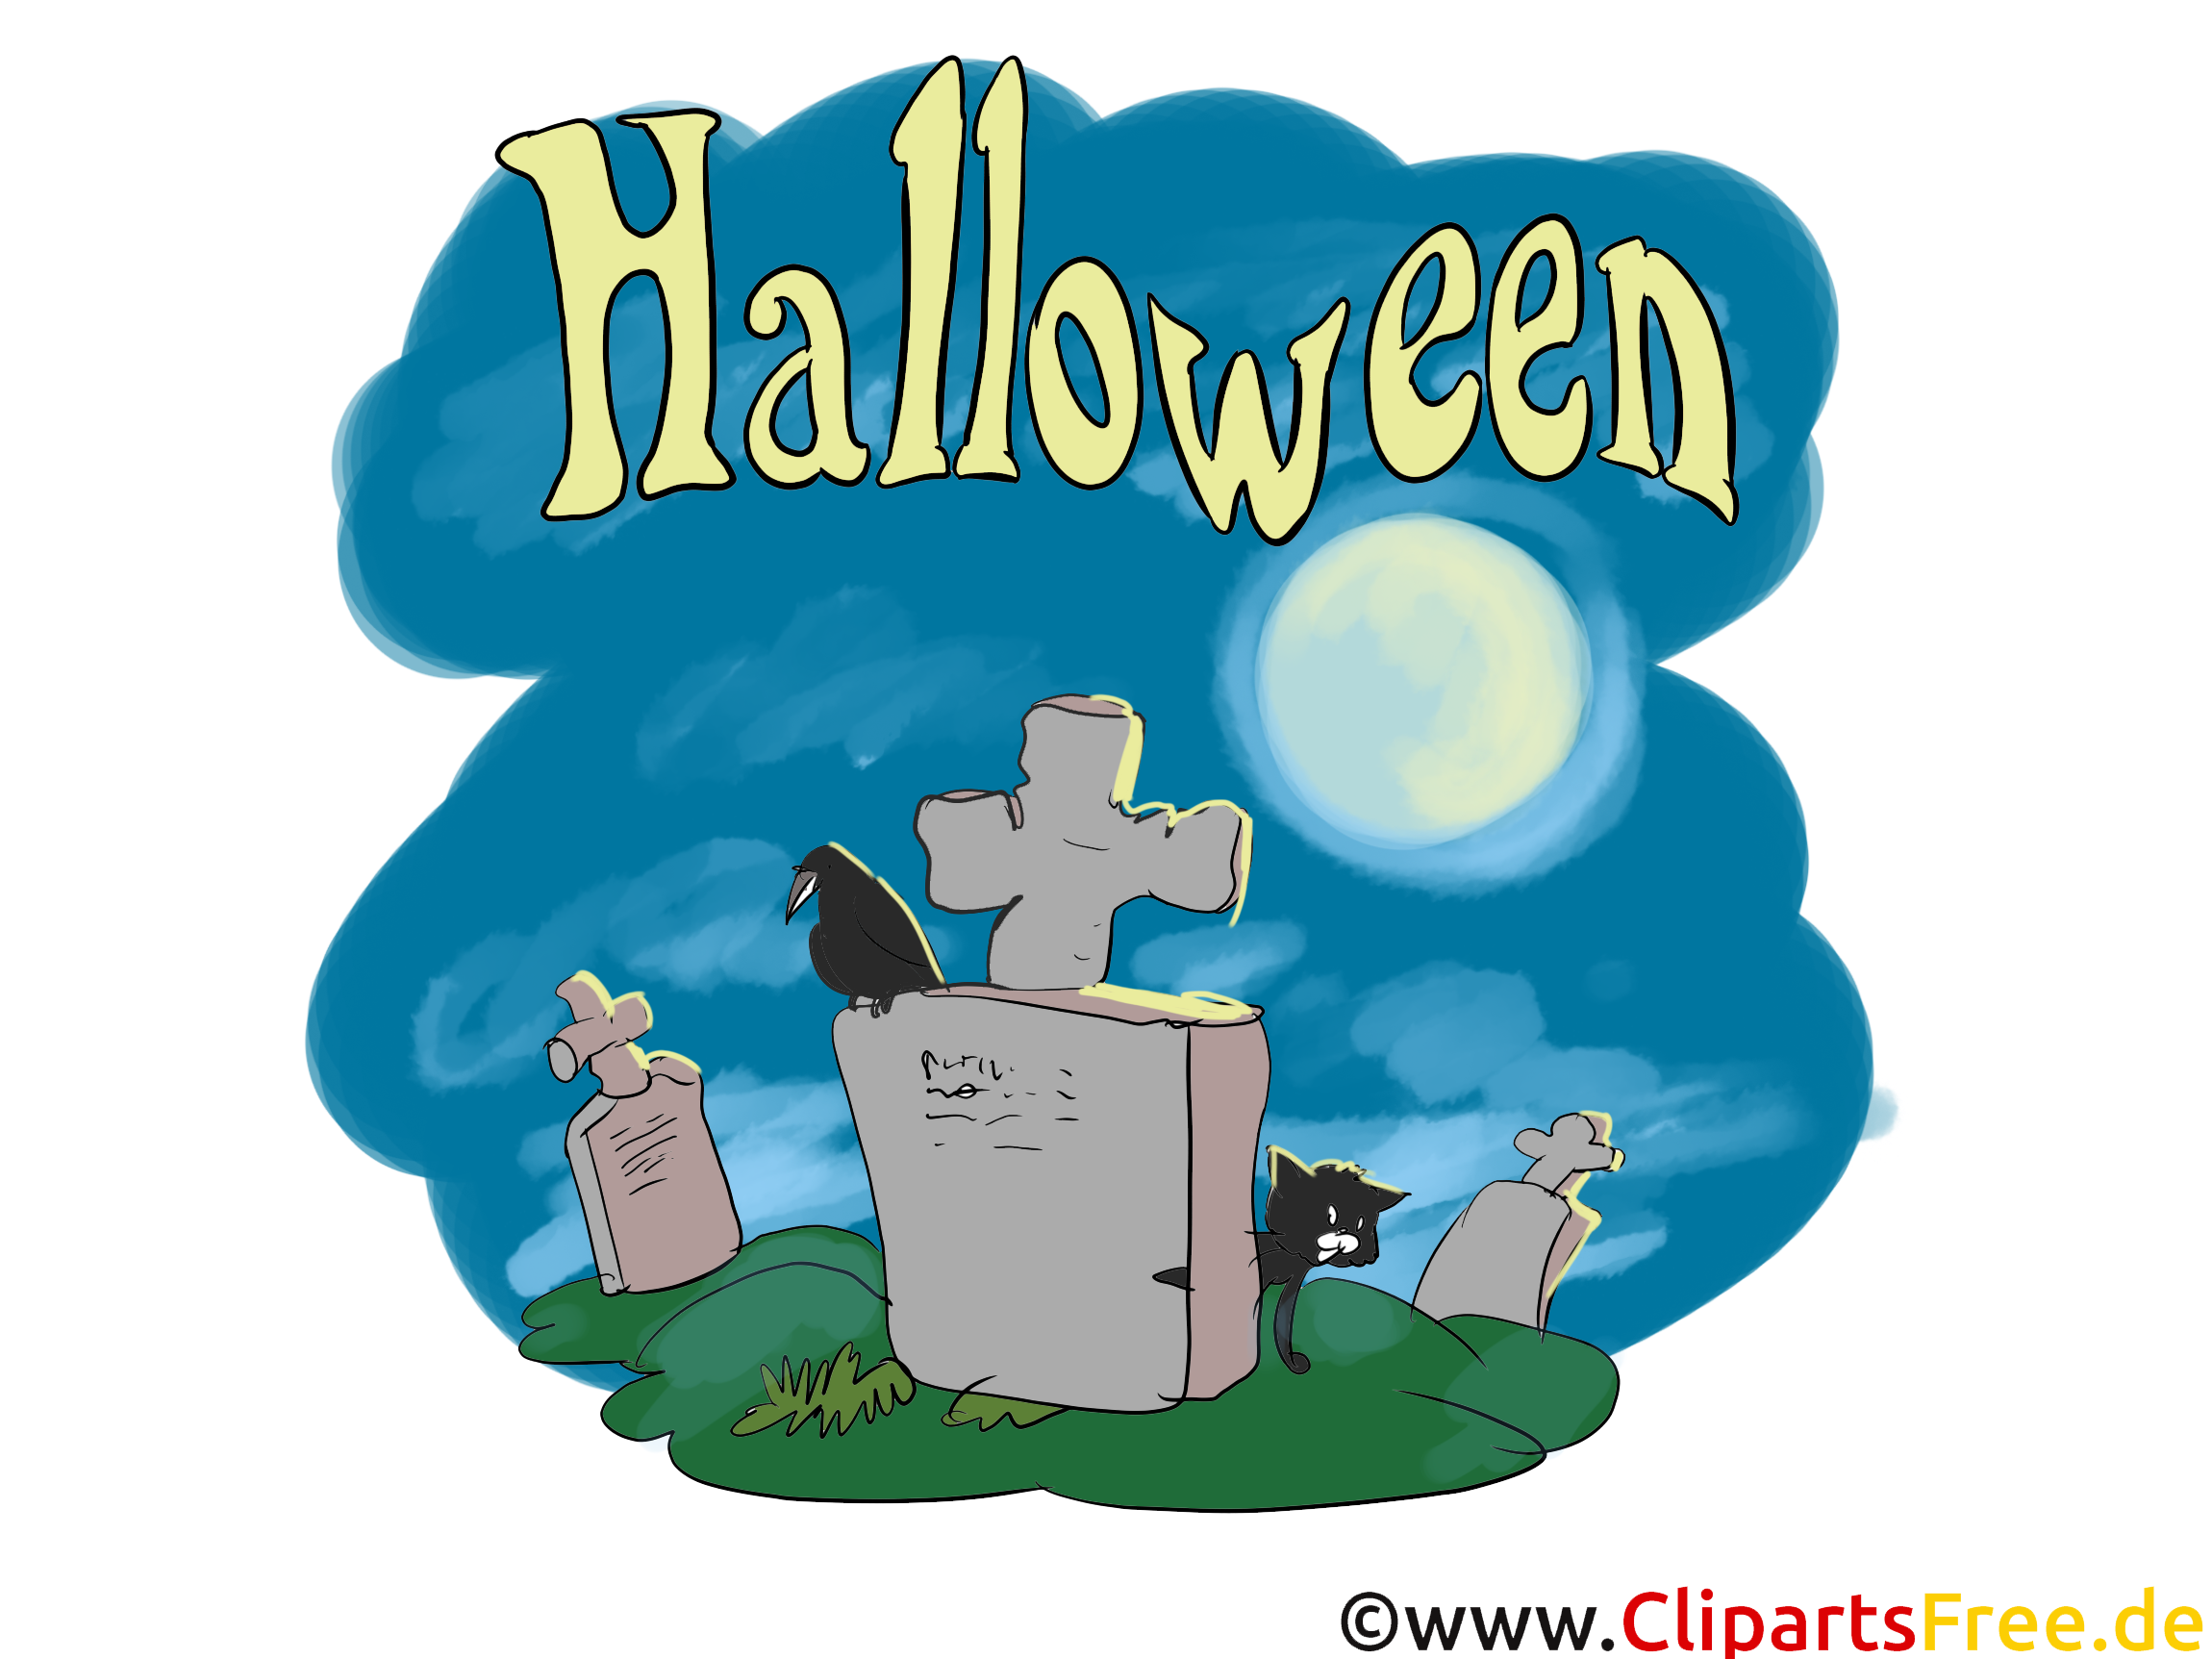 Cimetière image gratuite - Halloween cliparts